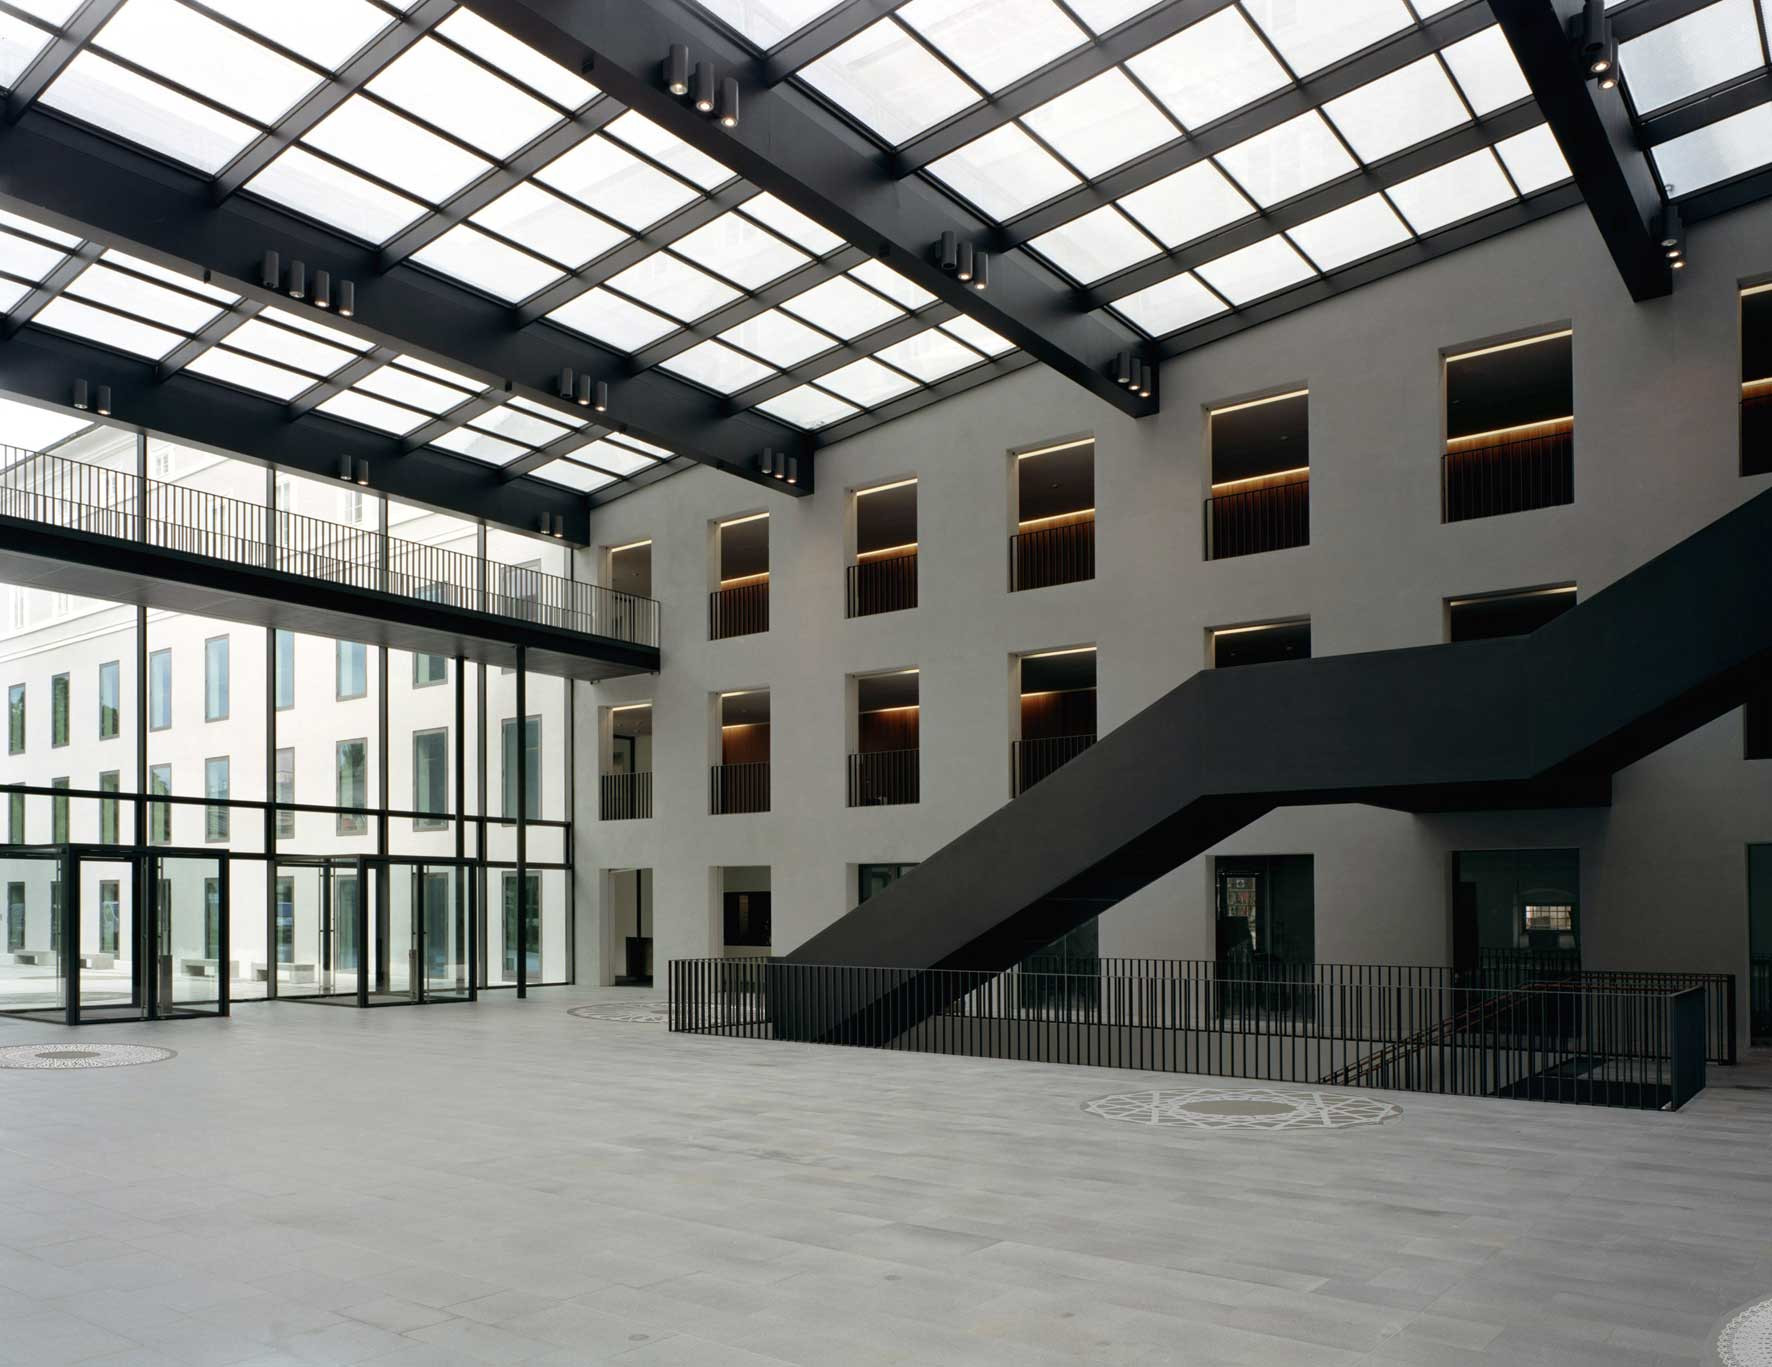 Halle Universität Mozarteum als Passage